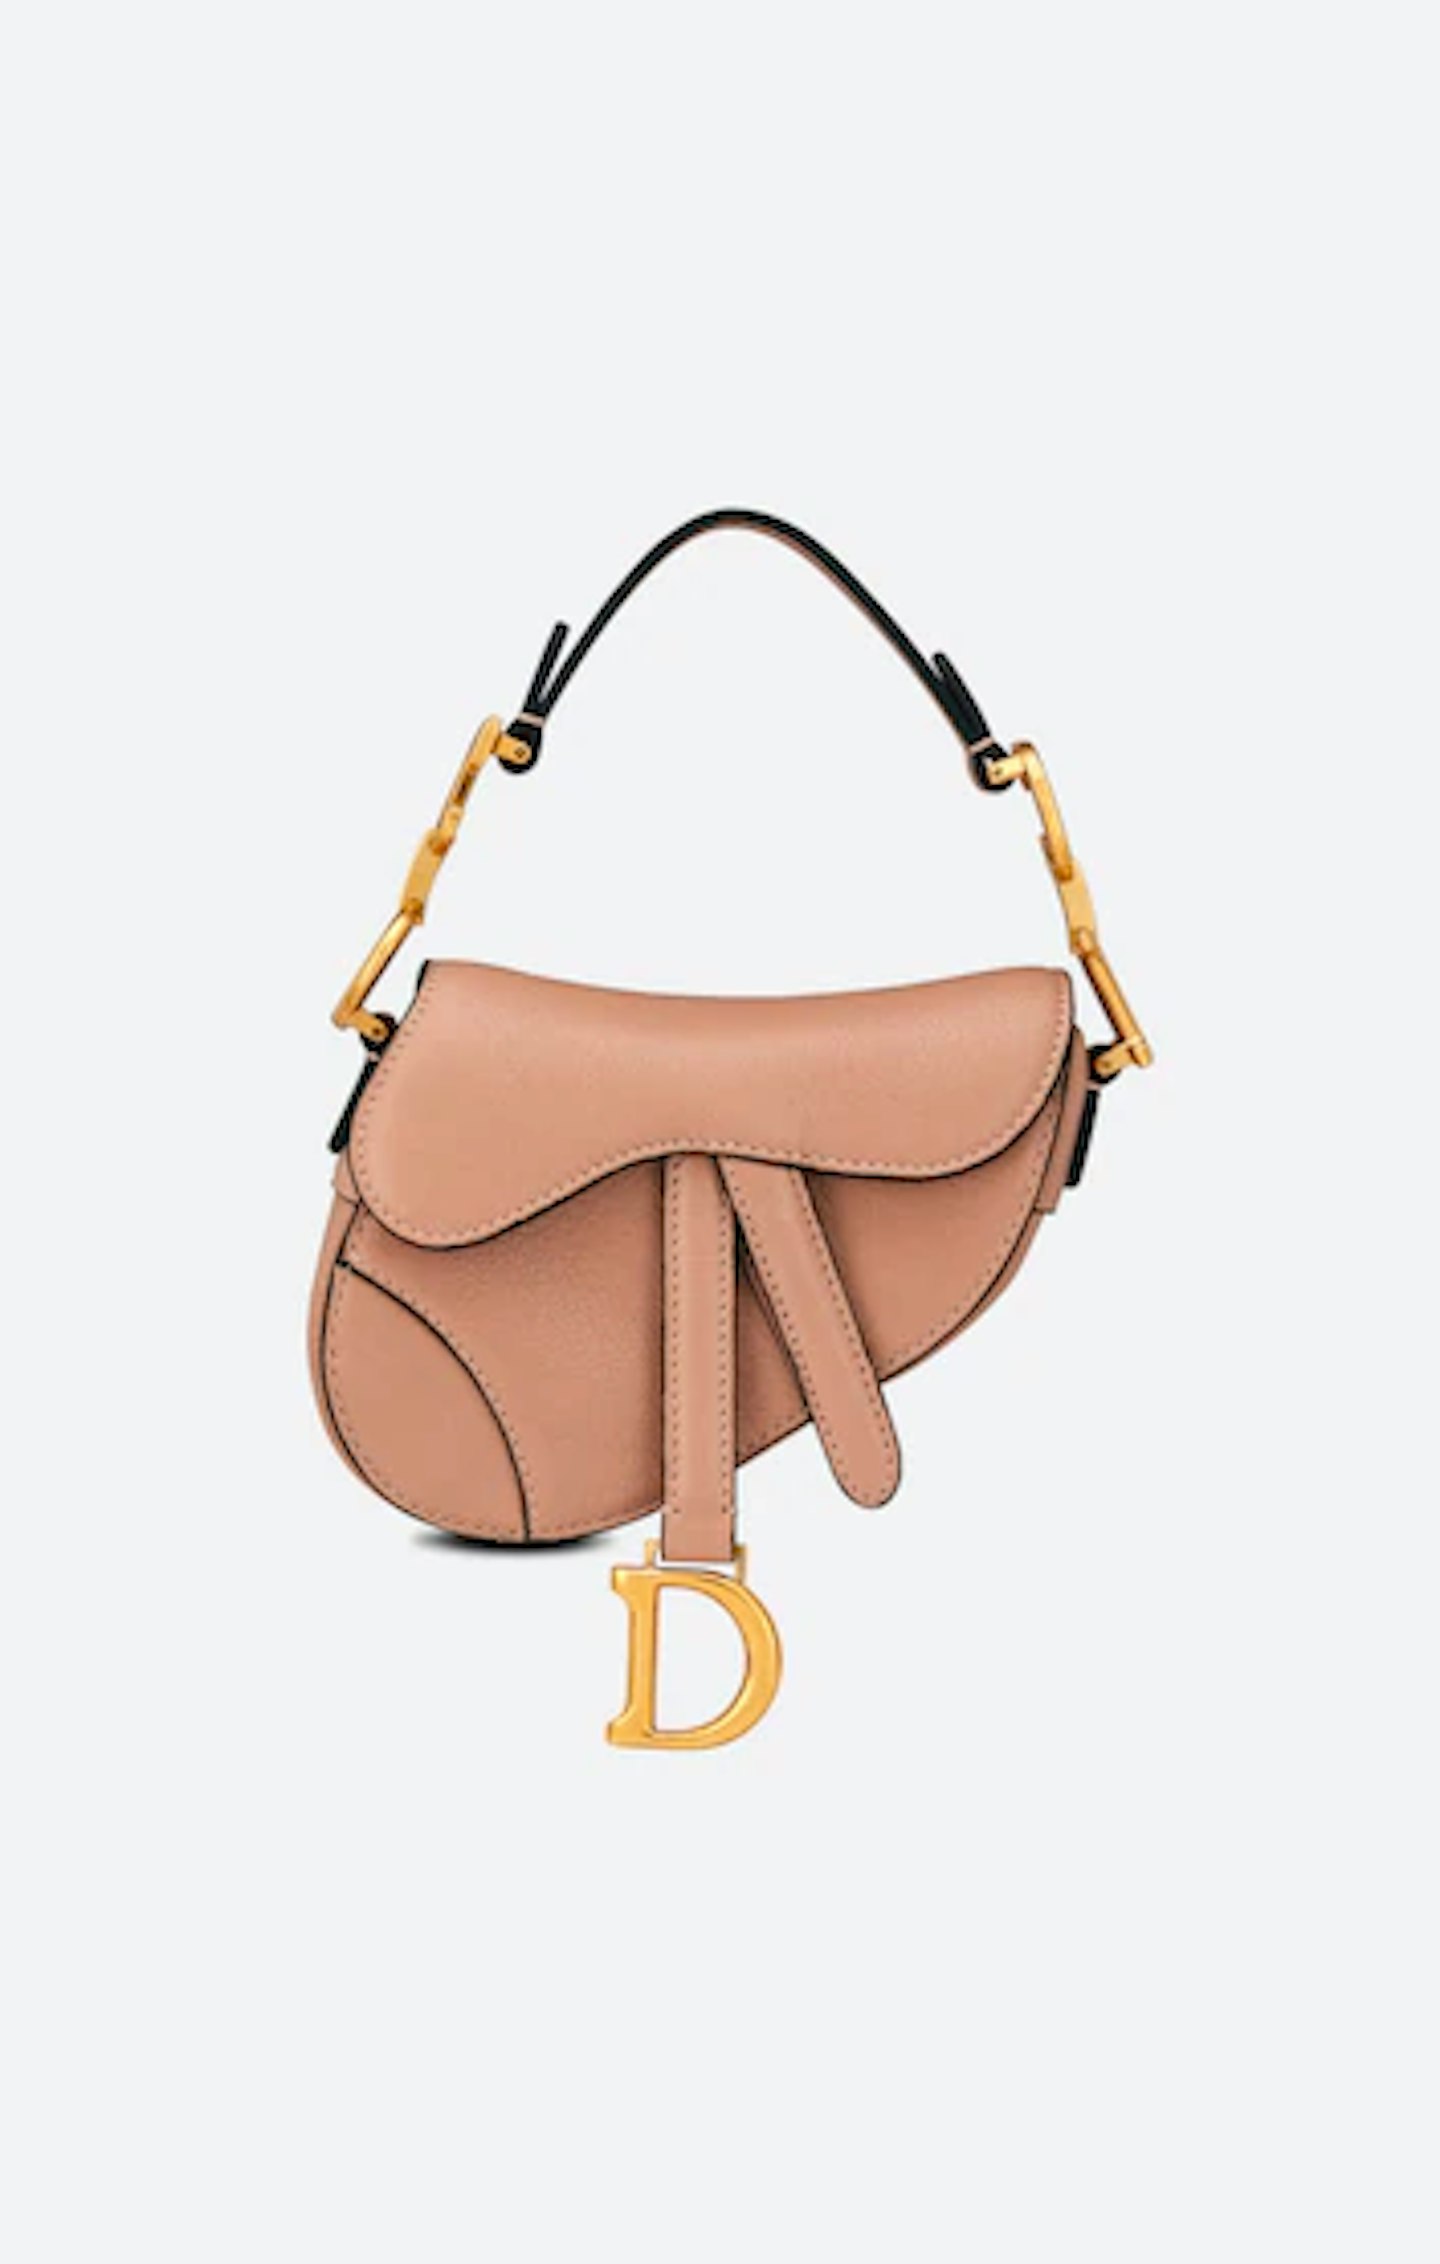 Christian Dior, Micro Saddle Bag, £1,800